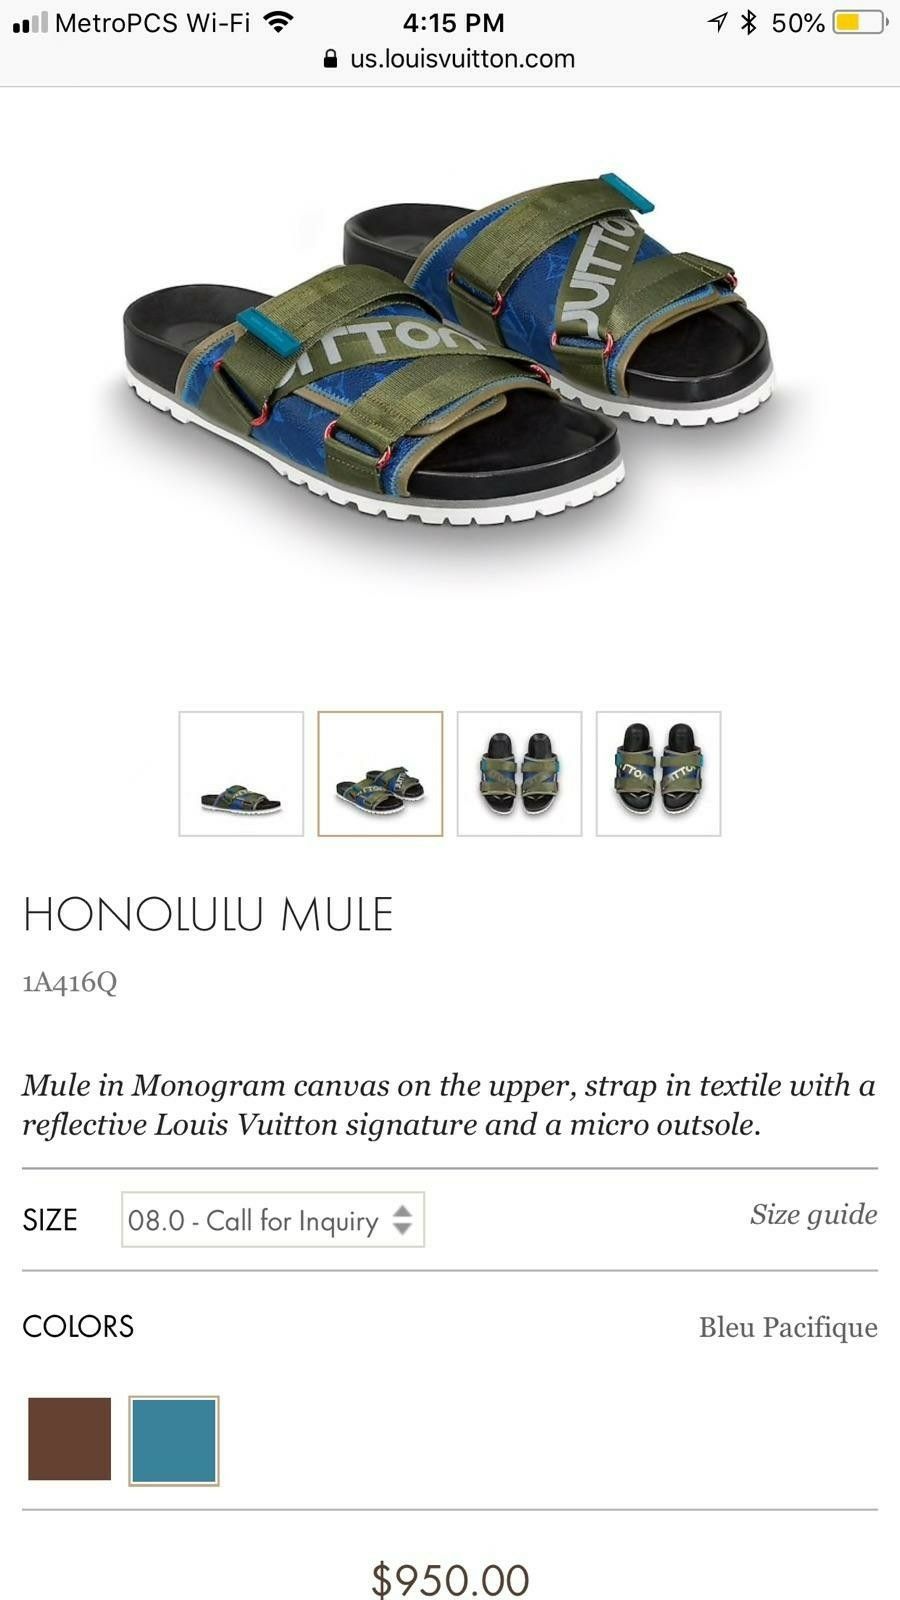 Louis Vuitton Honolulu Mule